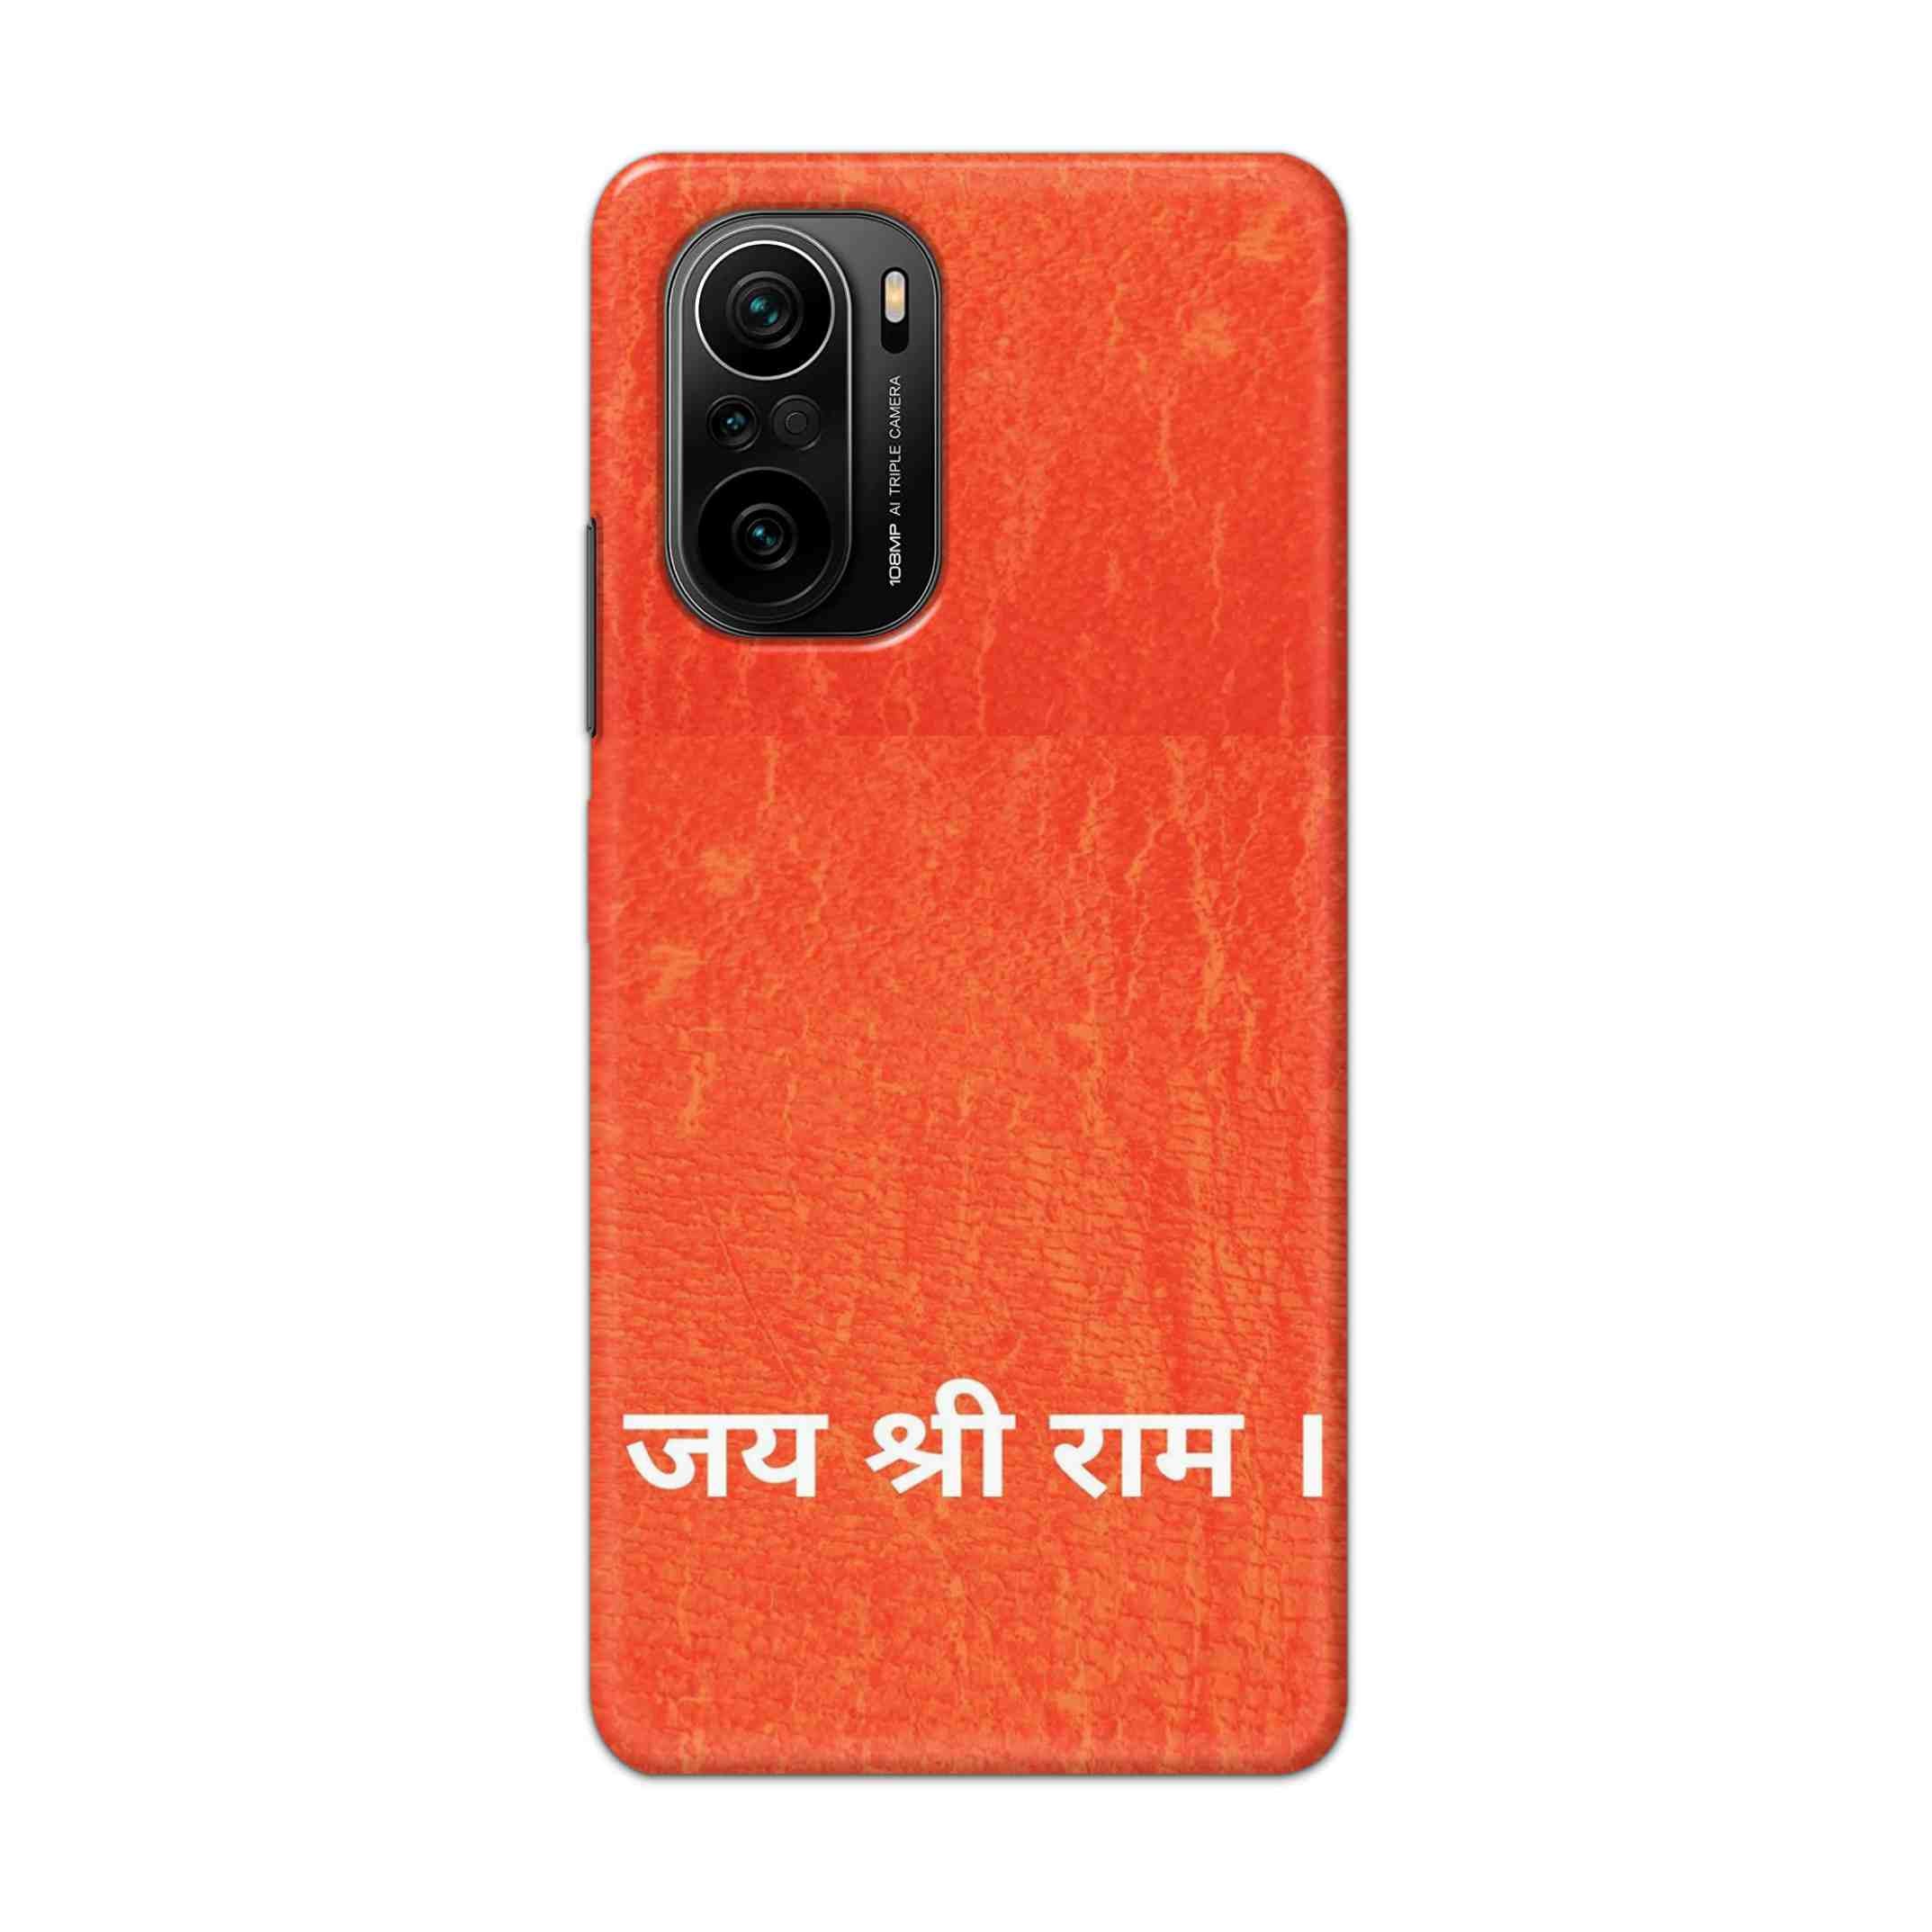 Buy Jai Shree Ram Hard Back Mobile Phone Case Cover For Mi 11i Online